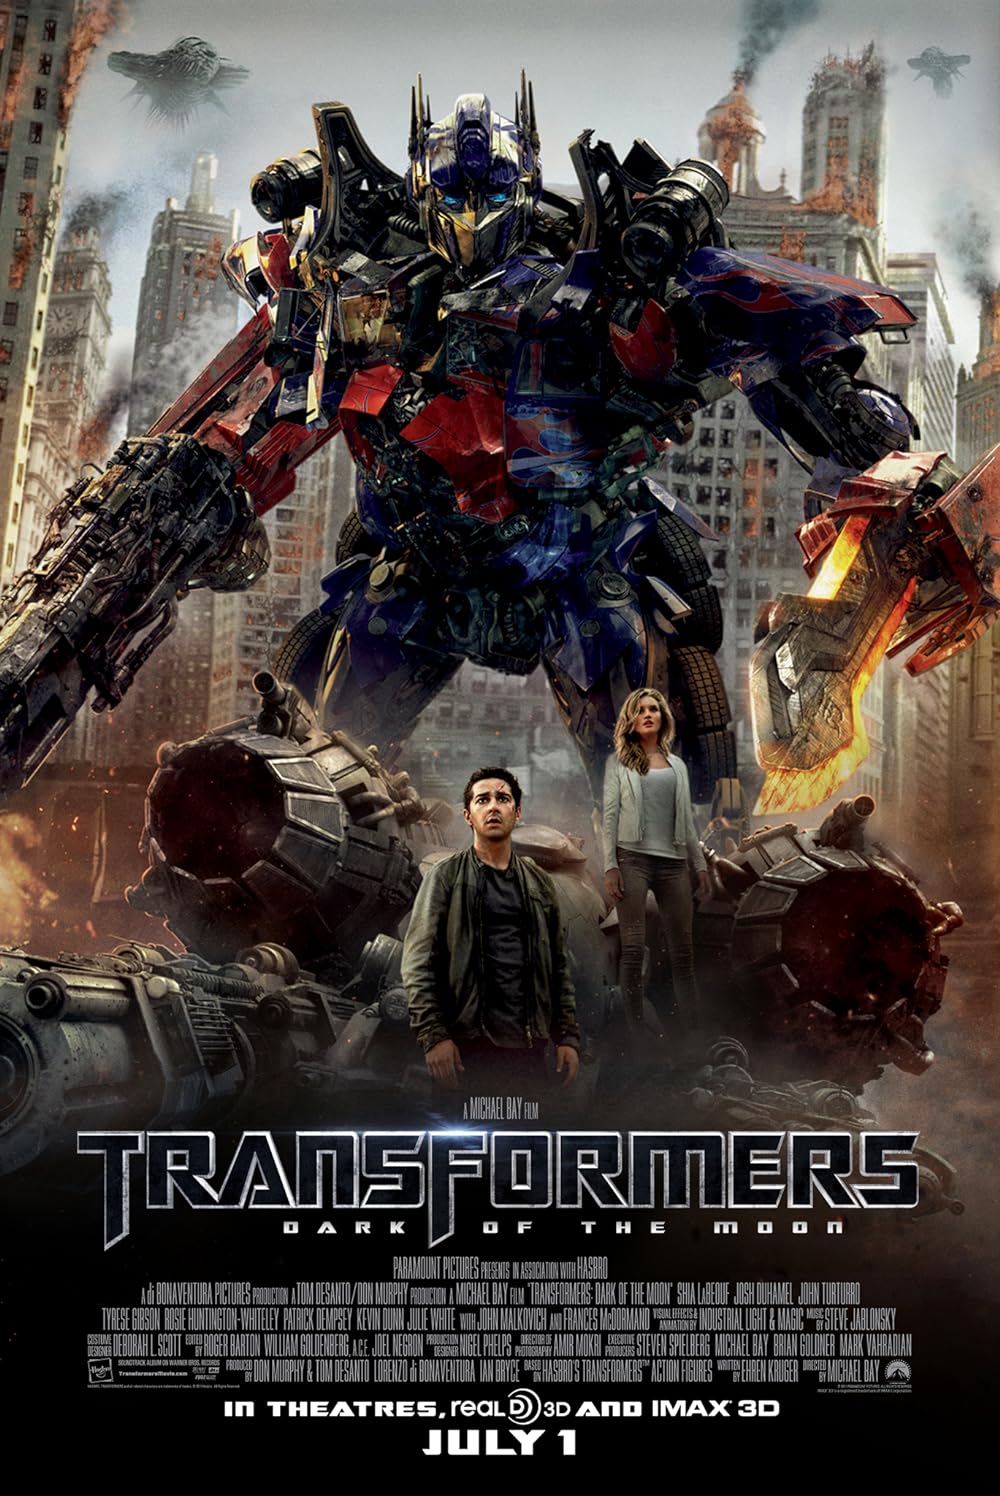 ดูหนังออนไลน์ฟรี Transformers Dark Of the Moon ทรานส์ฟอร์เมอร์ส 3 2011 พากย์ไทย